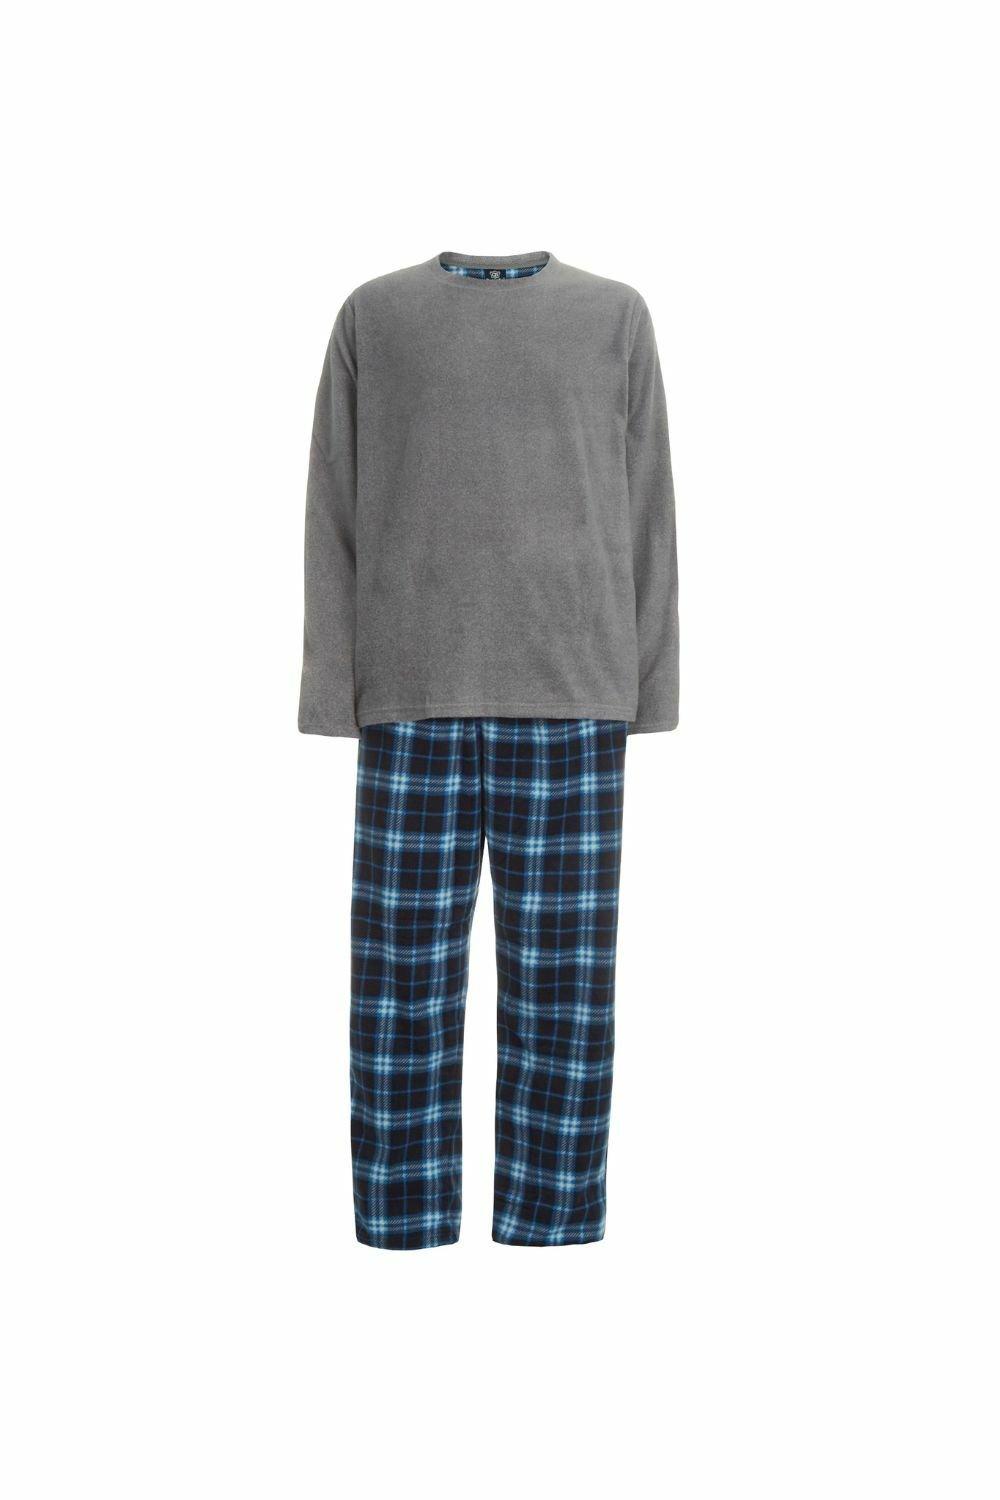 Women's Simply Vera Vera Wang Pajamas: Wintery Nights Microfleece Pajama Set